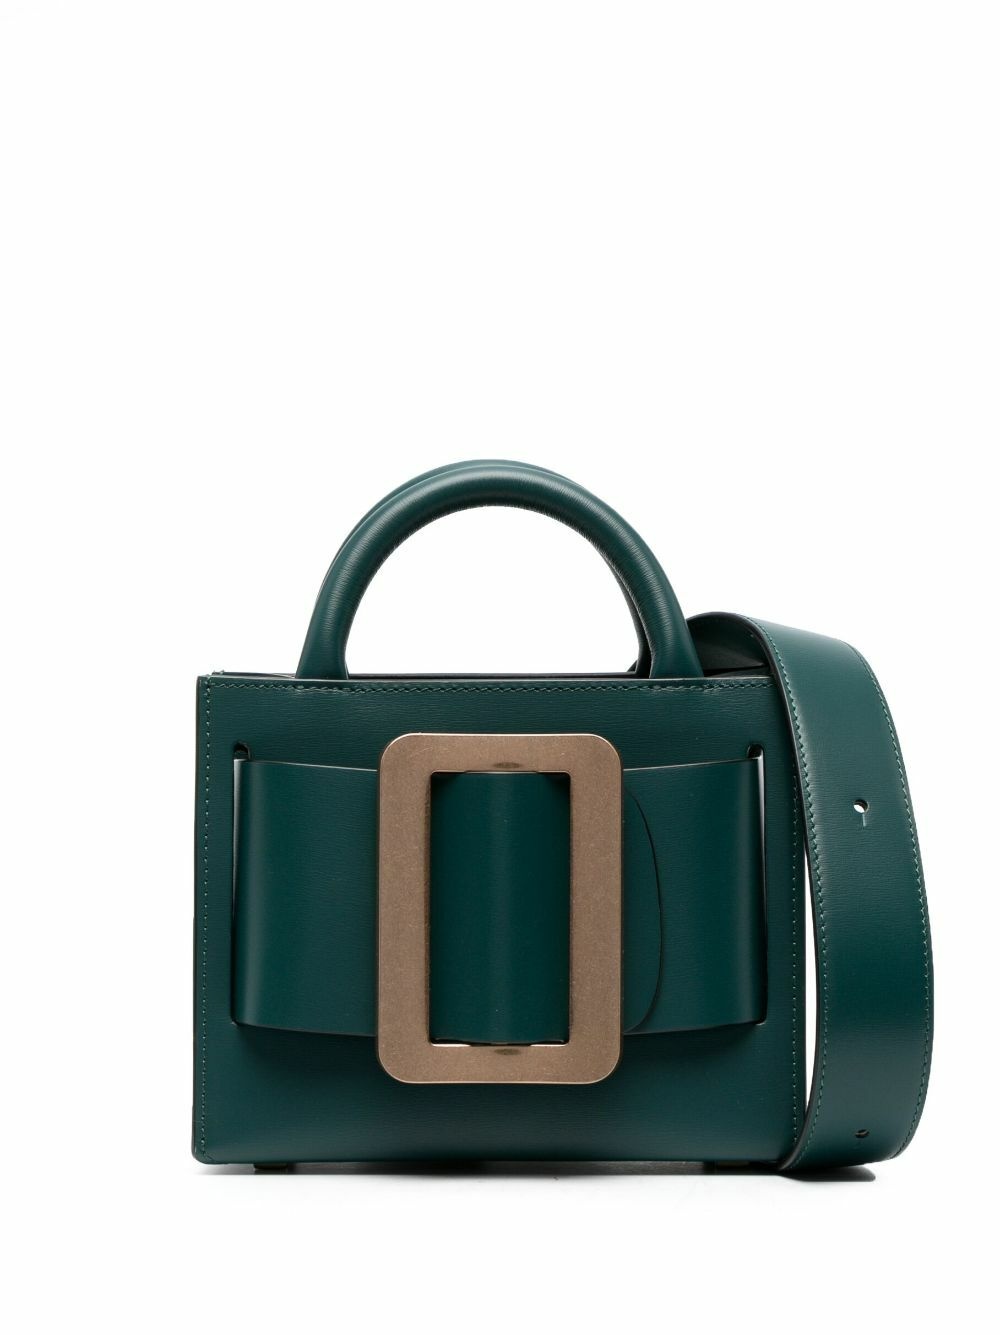 Boyy Buckle Pouchette Leather Handbag In Green